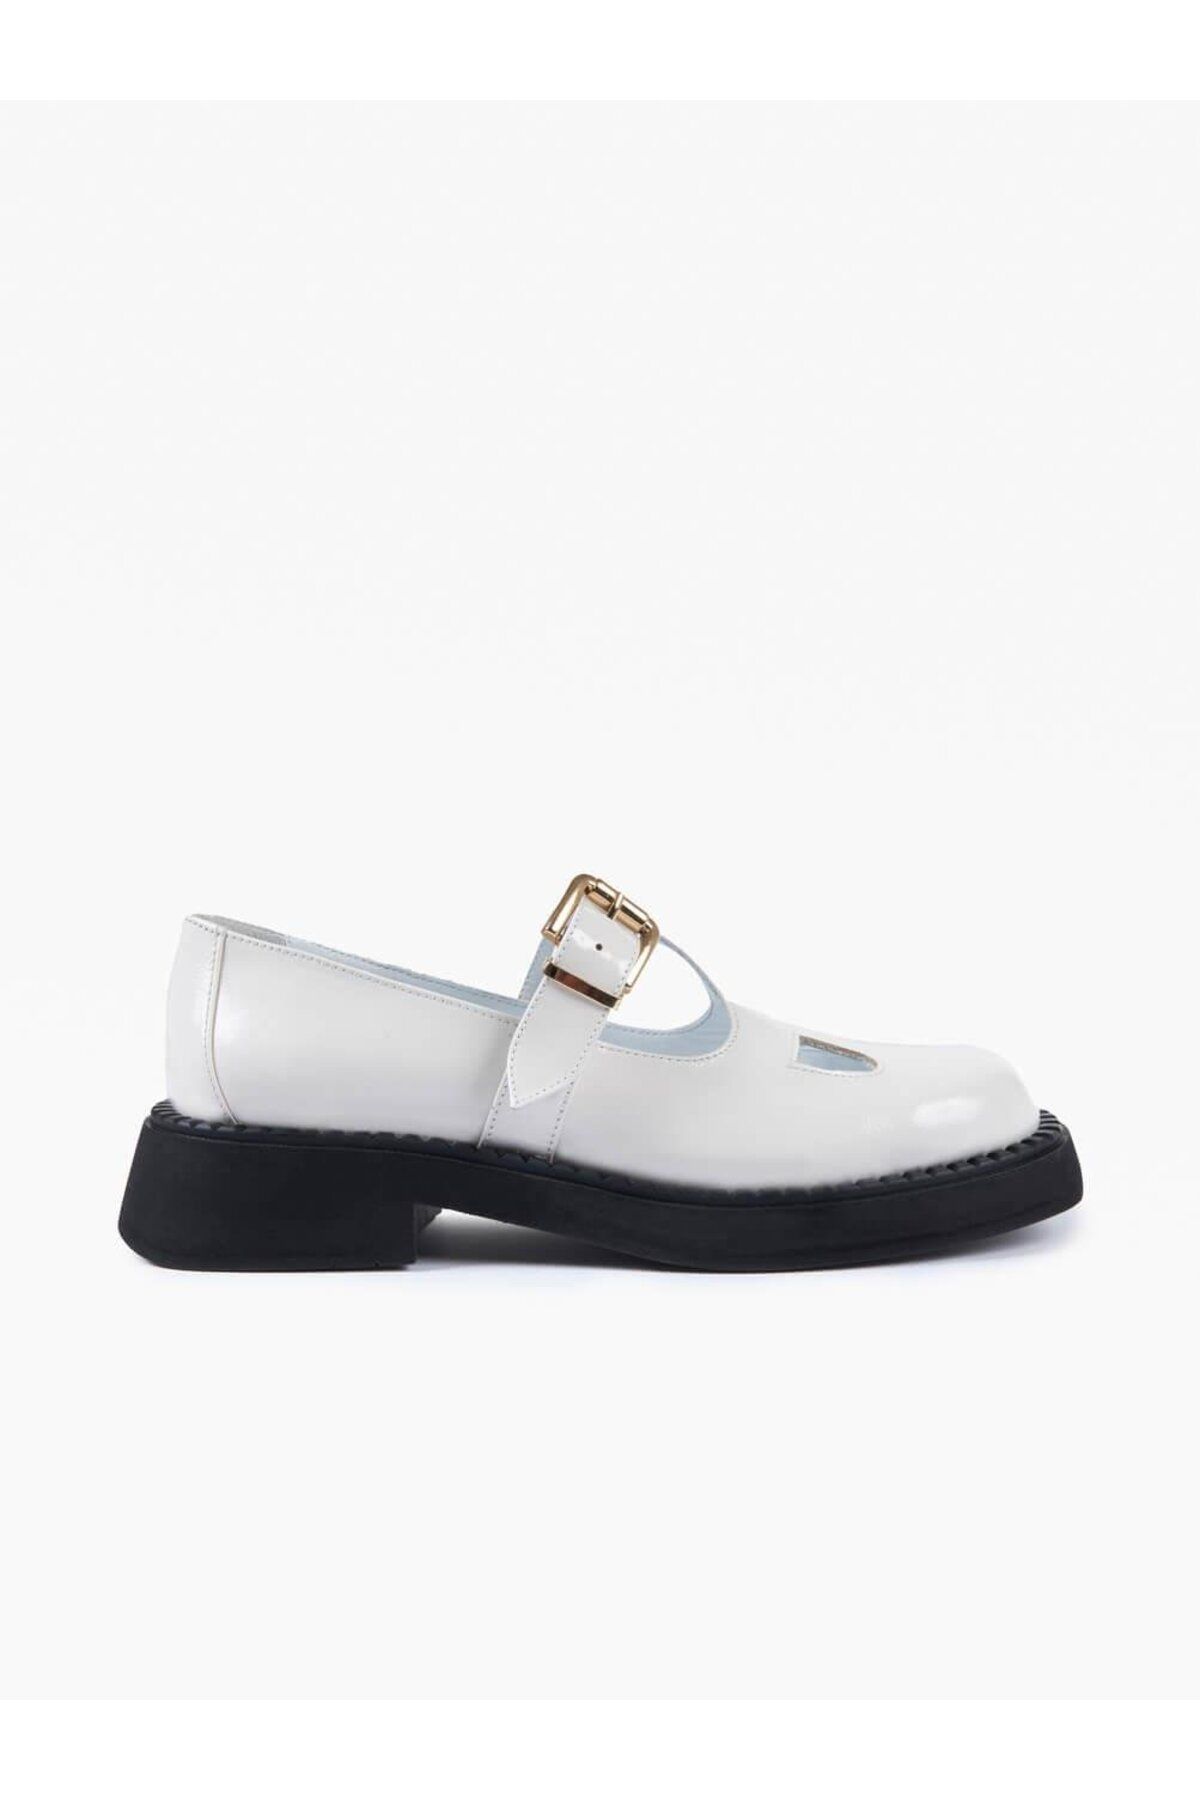 Favgi Maru Beyaz Deri Kadın Günlük Ayakkabı